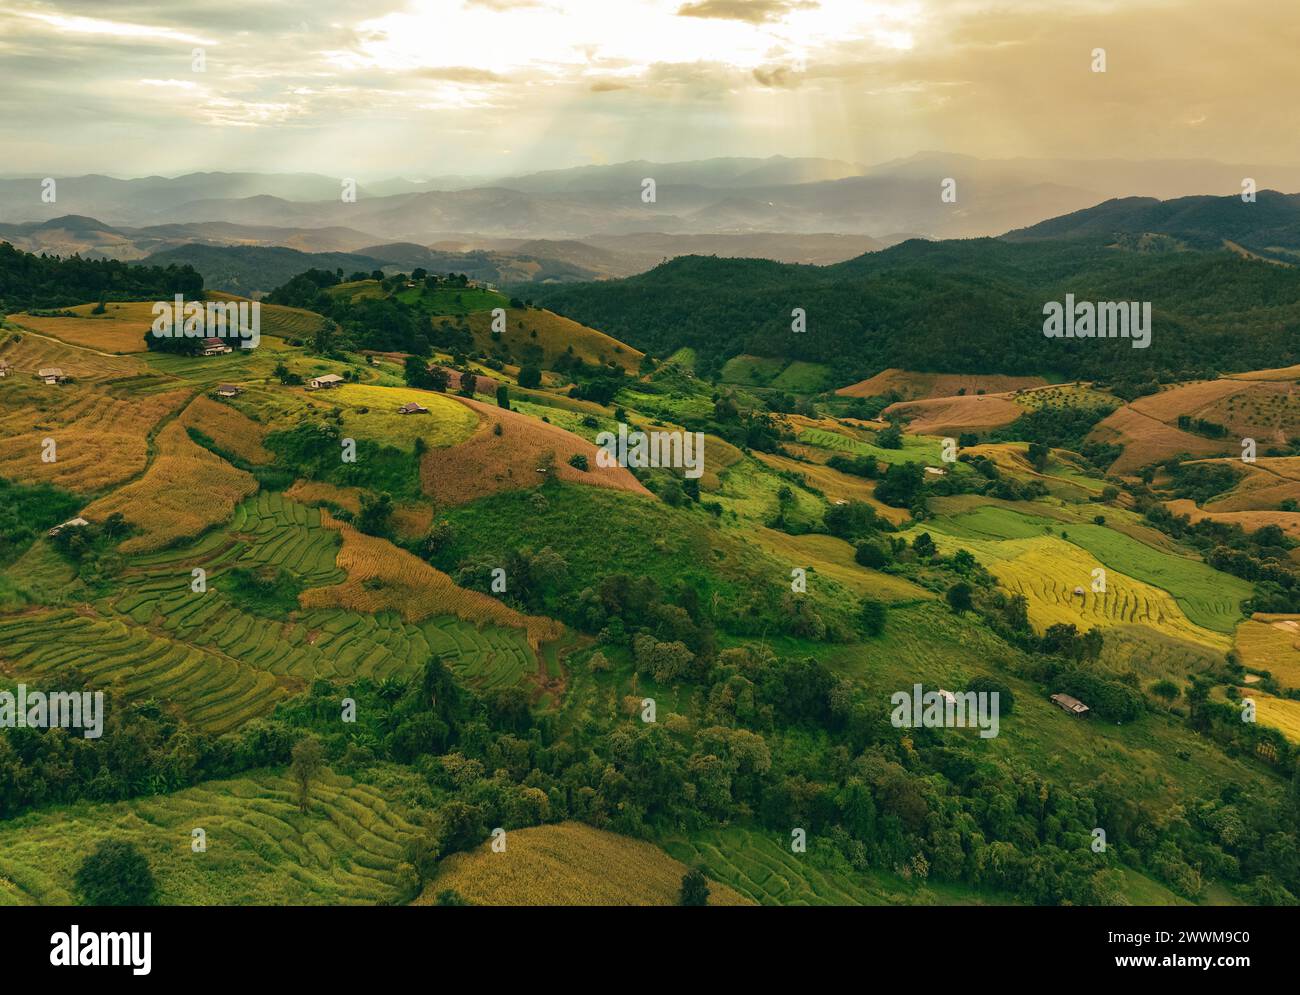 Paesaggio di verdi montagne con risaie terrazzate e lussureggianti piantagioni. Ambiente sereno. Riso biologico nella valle. Viaggi eco-turistici. Foto Stock